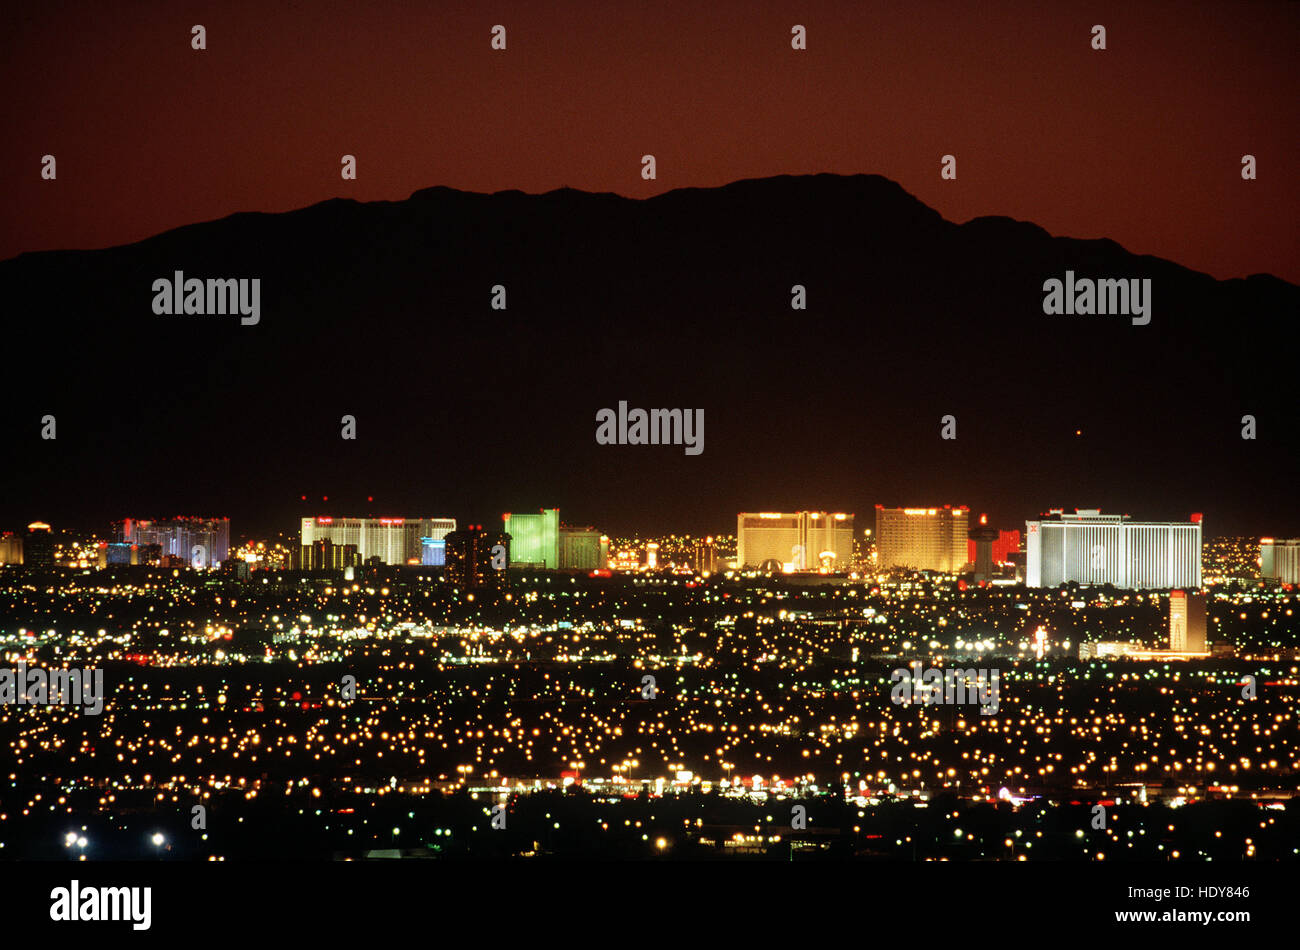 Image historique de la ville de Las Vegas au milieu des années 1990 (1995) Banque D'Images